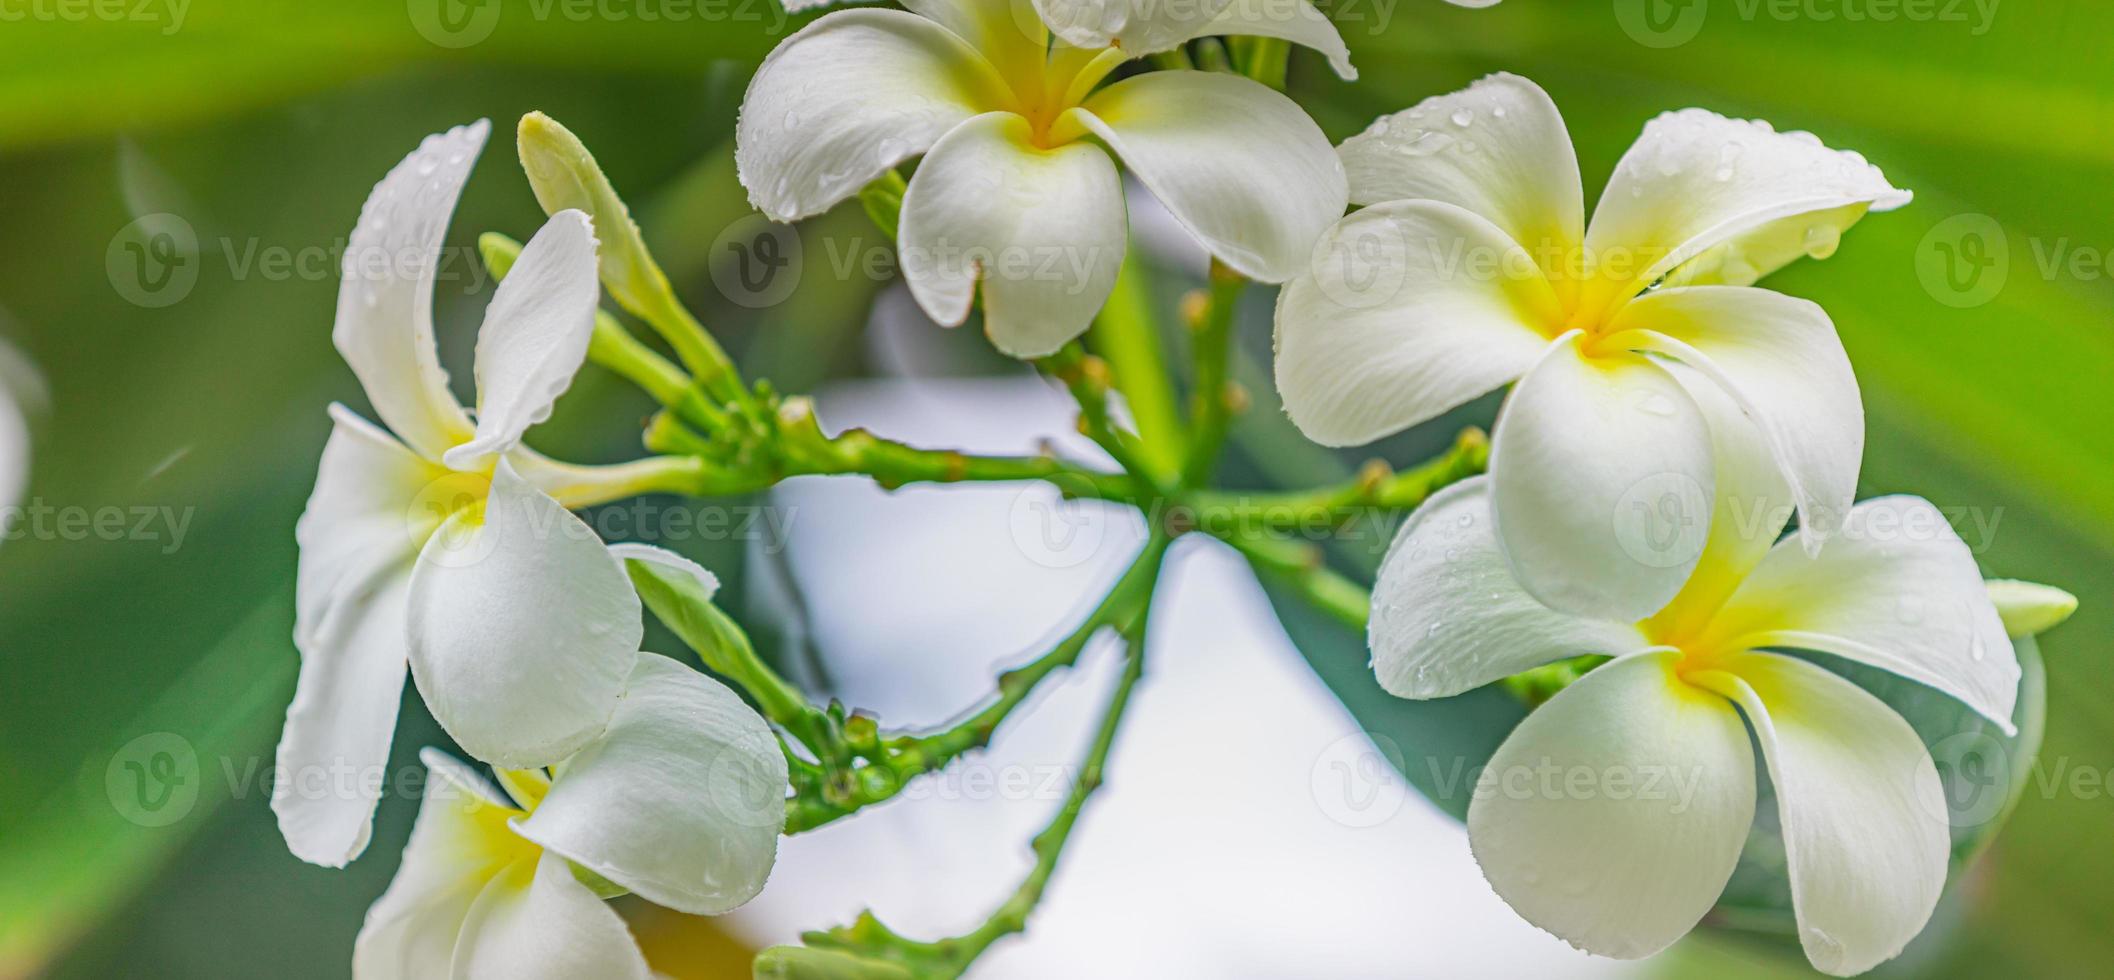 florescendo frangipani branco amarelo ou plumeria, flores de spa com folhas verdes na árvore na luz da noite com fundo verde turva natural. amo closeup floral, natureza exótica. padrão de jardim tropical foto